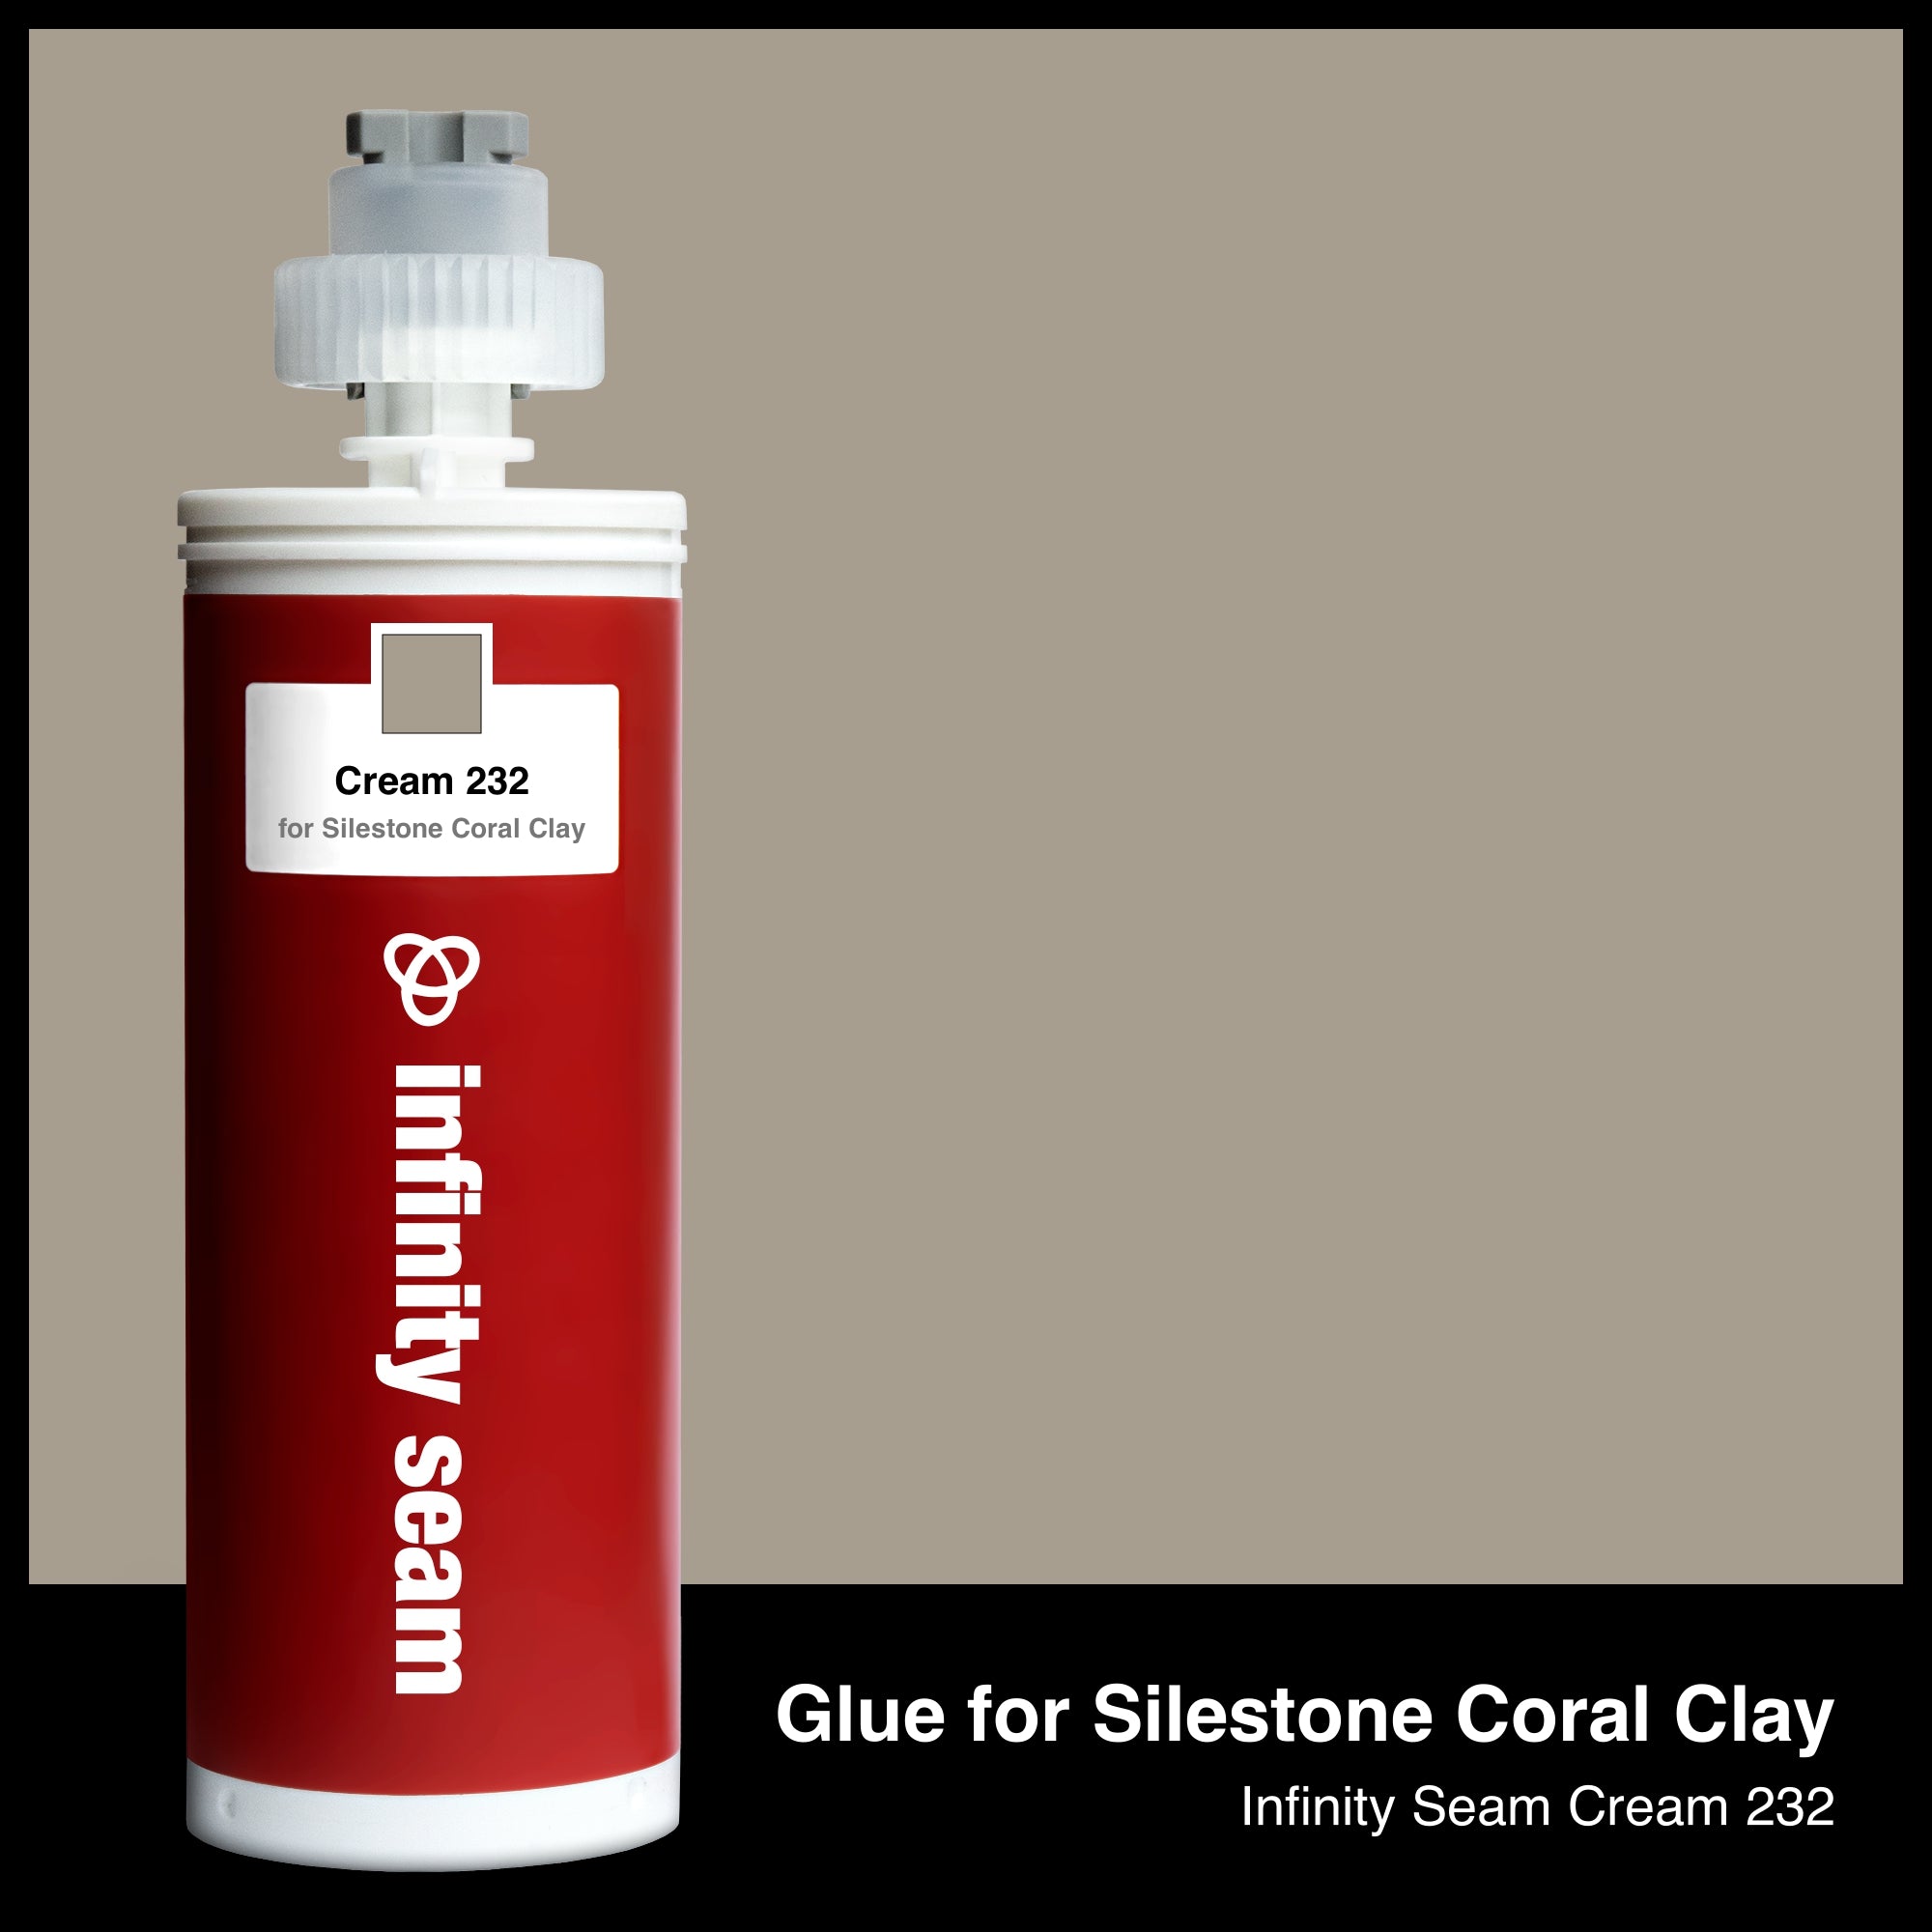 Glue for Silestone Coral Clay: Infinity Seam Cream 232